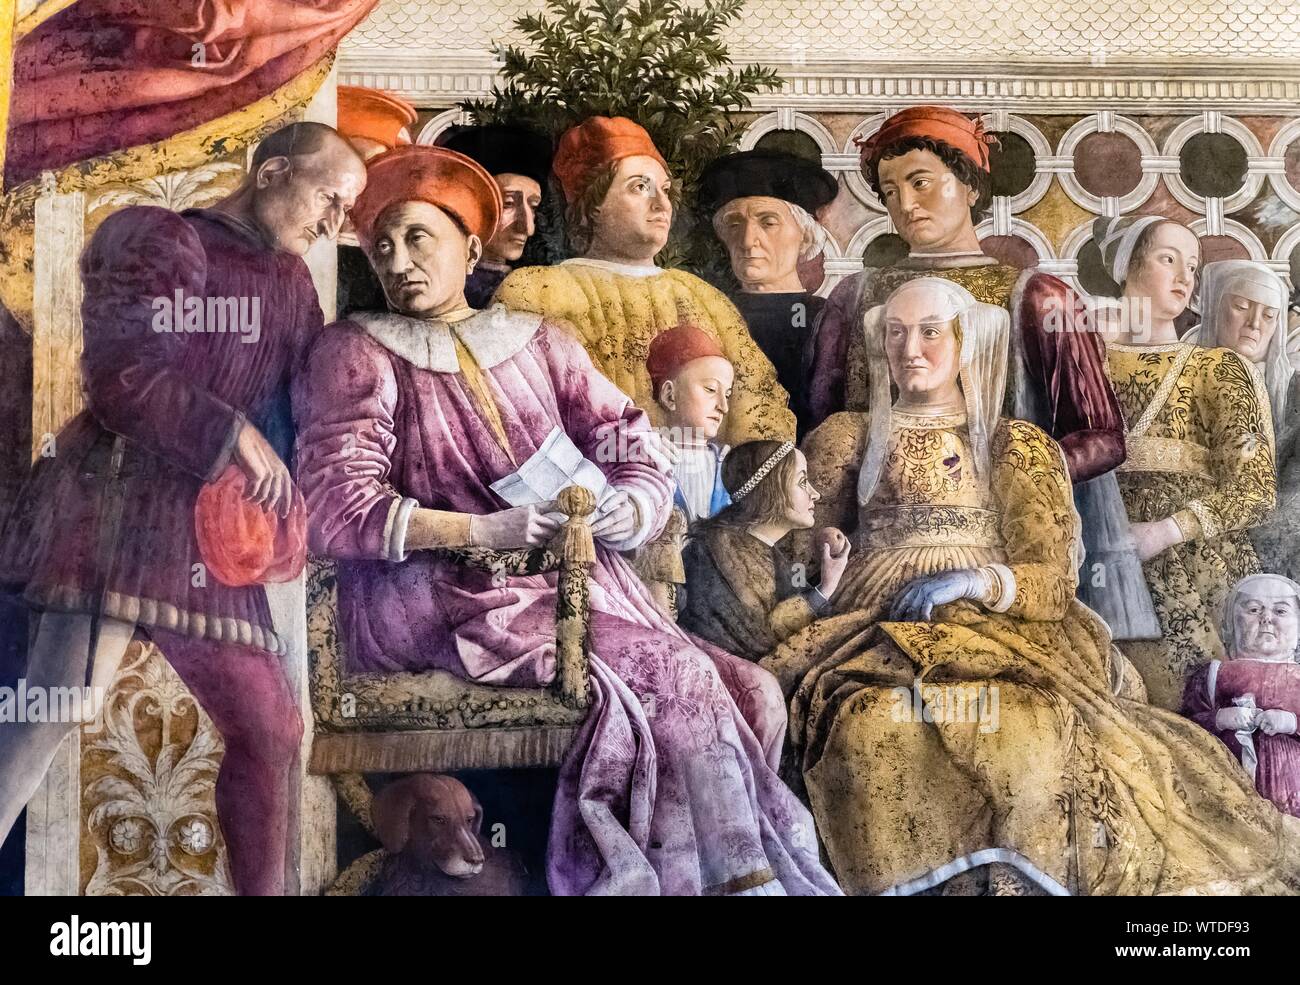 Margrave Ludovico Gonzaga avec son épouse Barbara von Brandenburg ses enfants et le personnel de la cour, fresque d'Andrea Mantegna, 1465-1474, Renaissance Banque D'Images